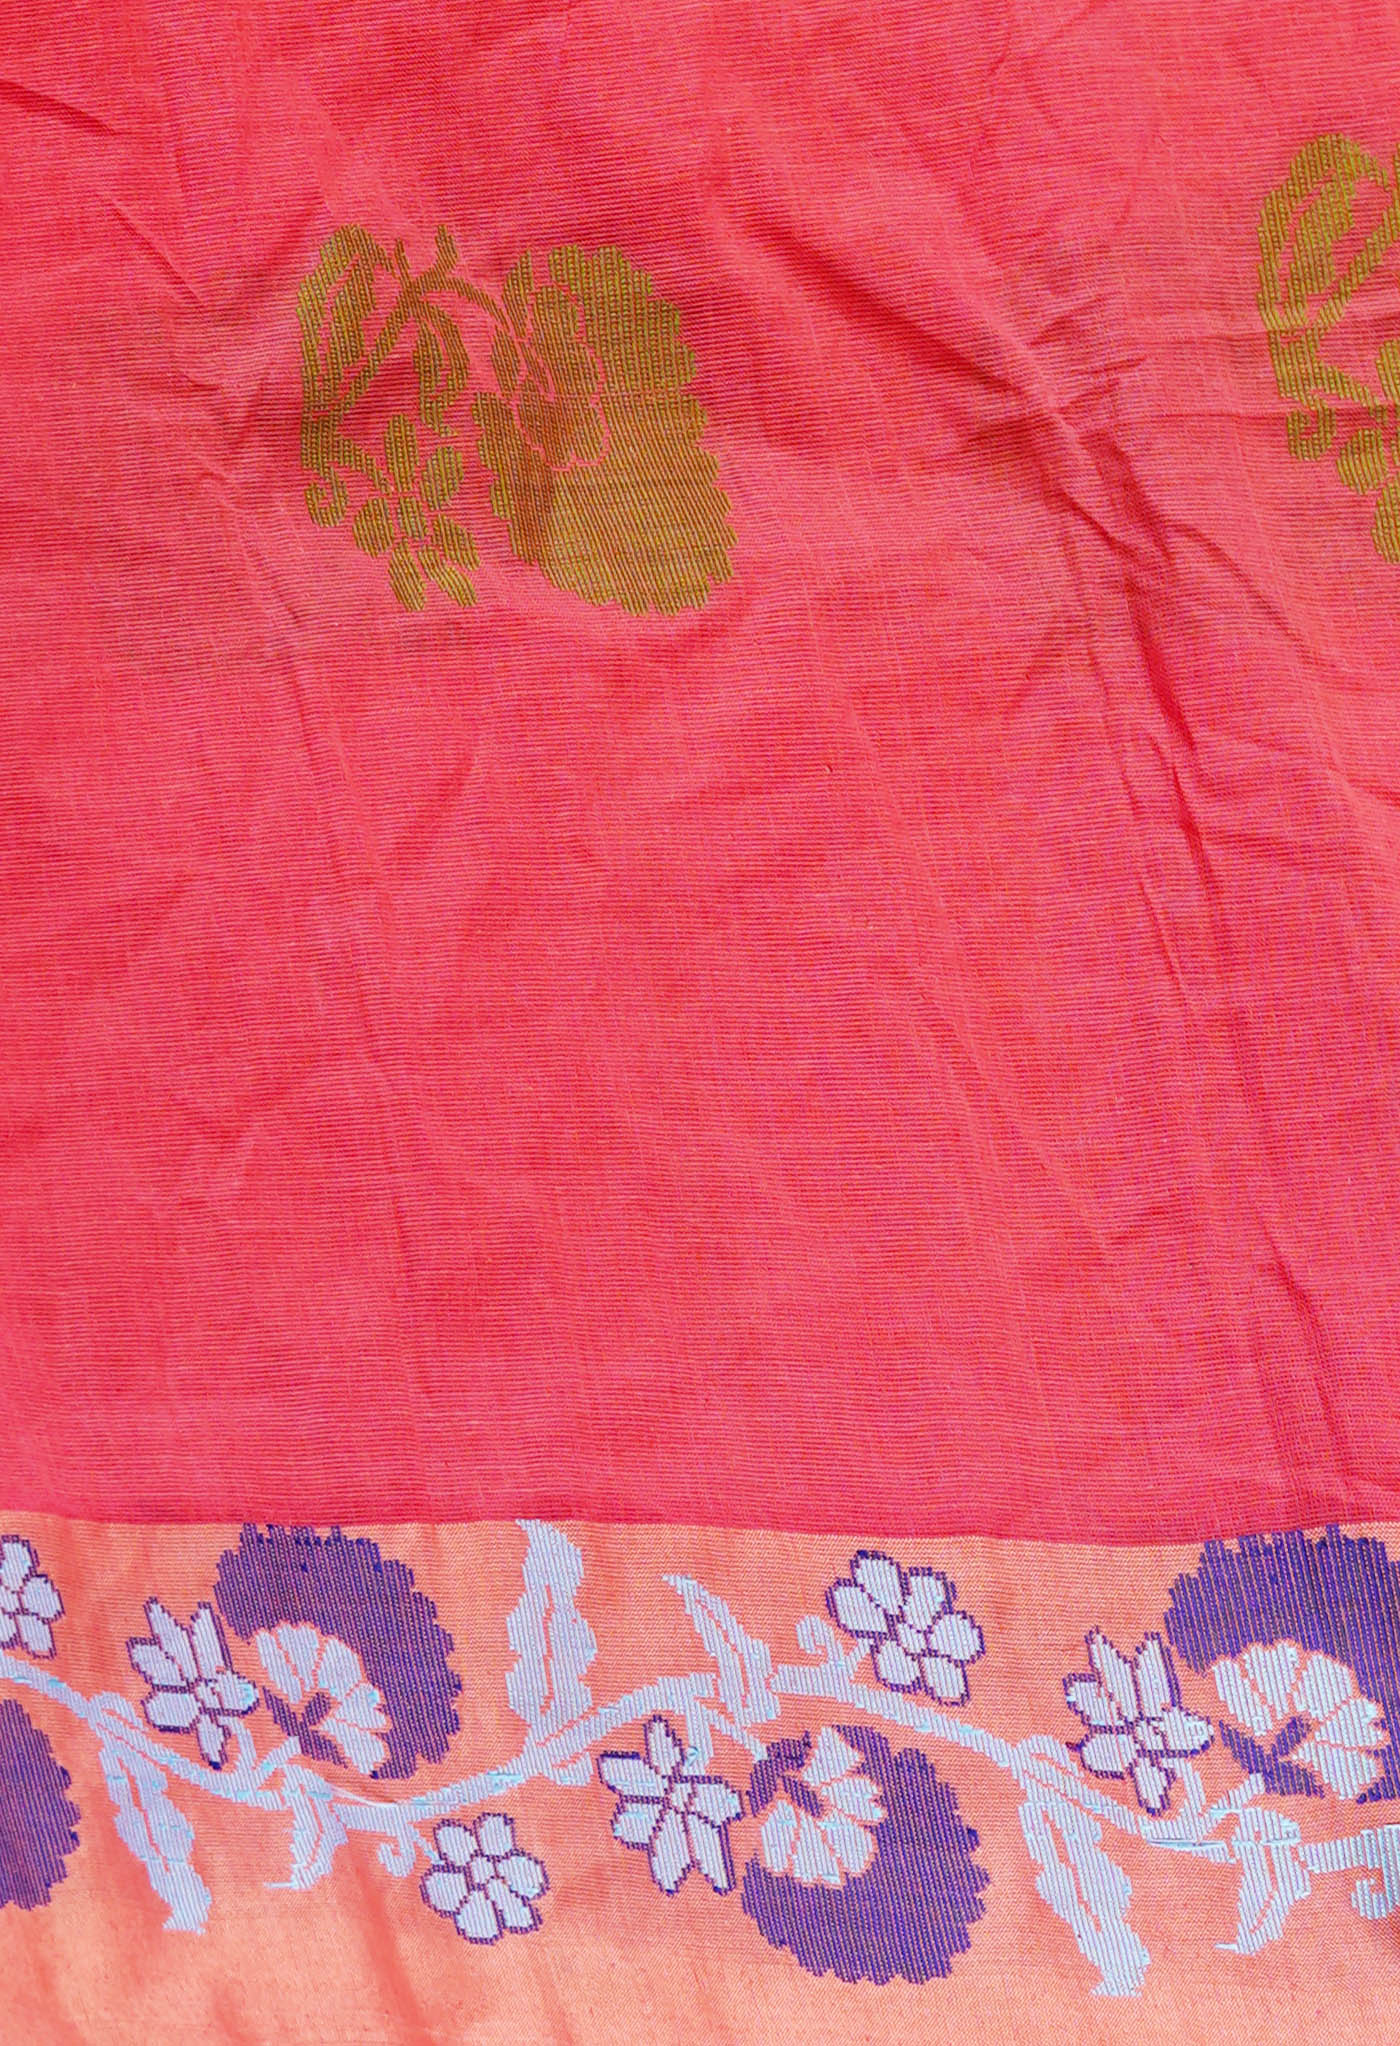 Peach Red Pure Handloom Dhaka Jamdhani Bengal Cotton Saree-UNM68740